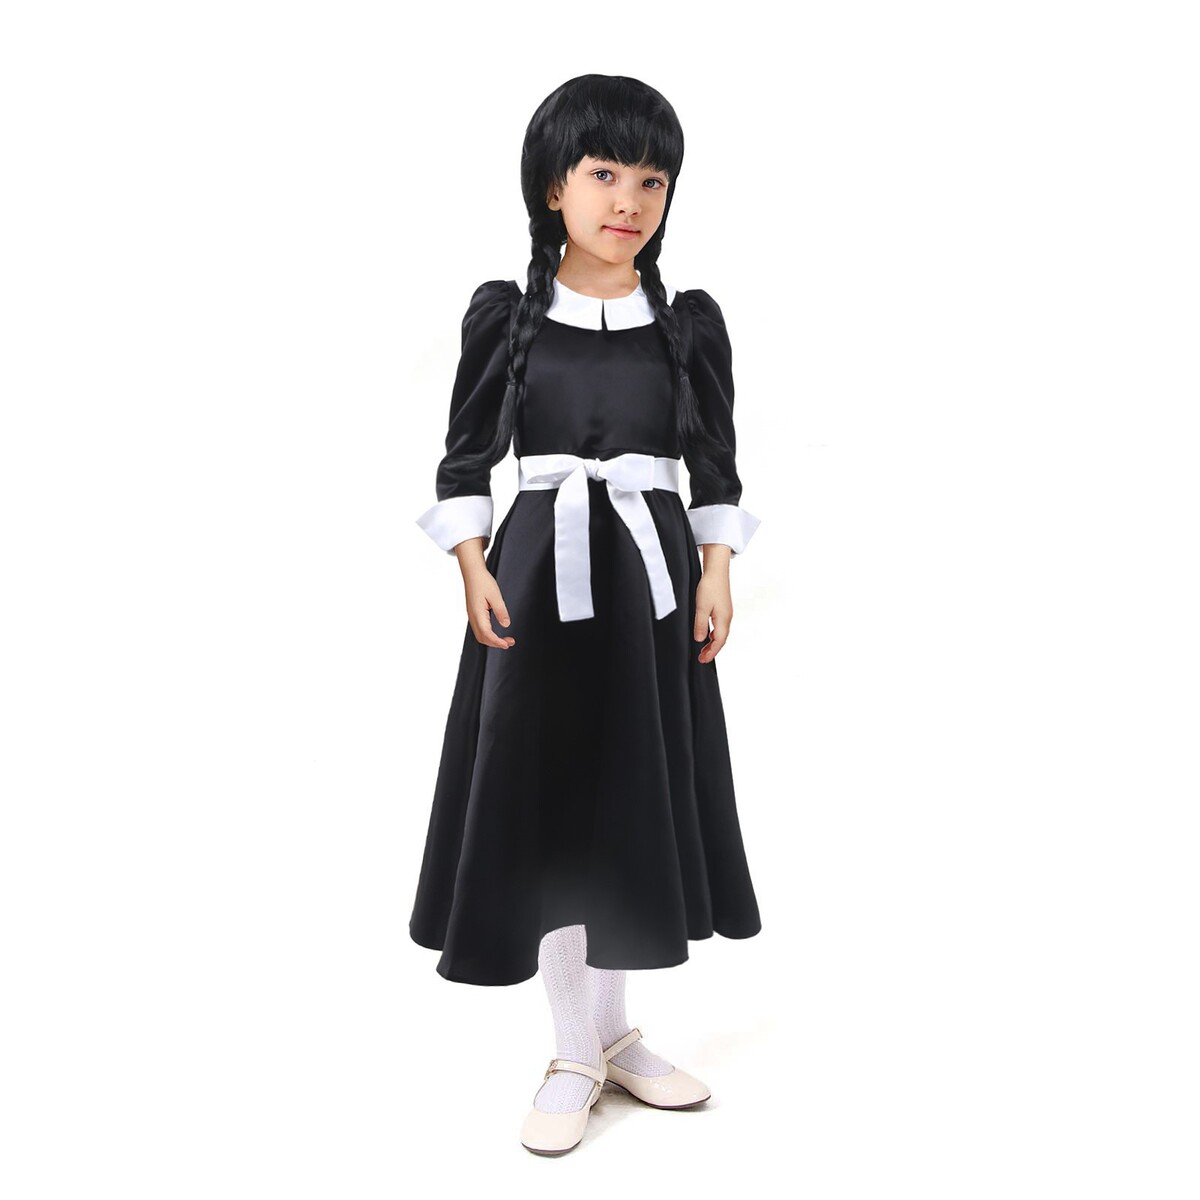 Карнавальное черное платье с белым воротником,атлас,п/э,р-р44,р164 атлас и аксис т4